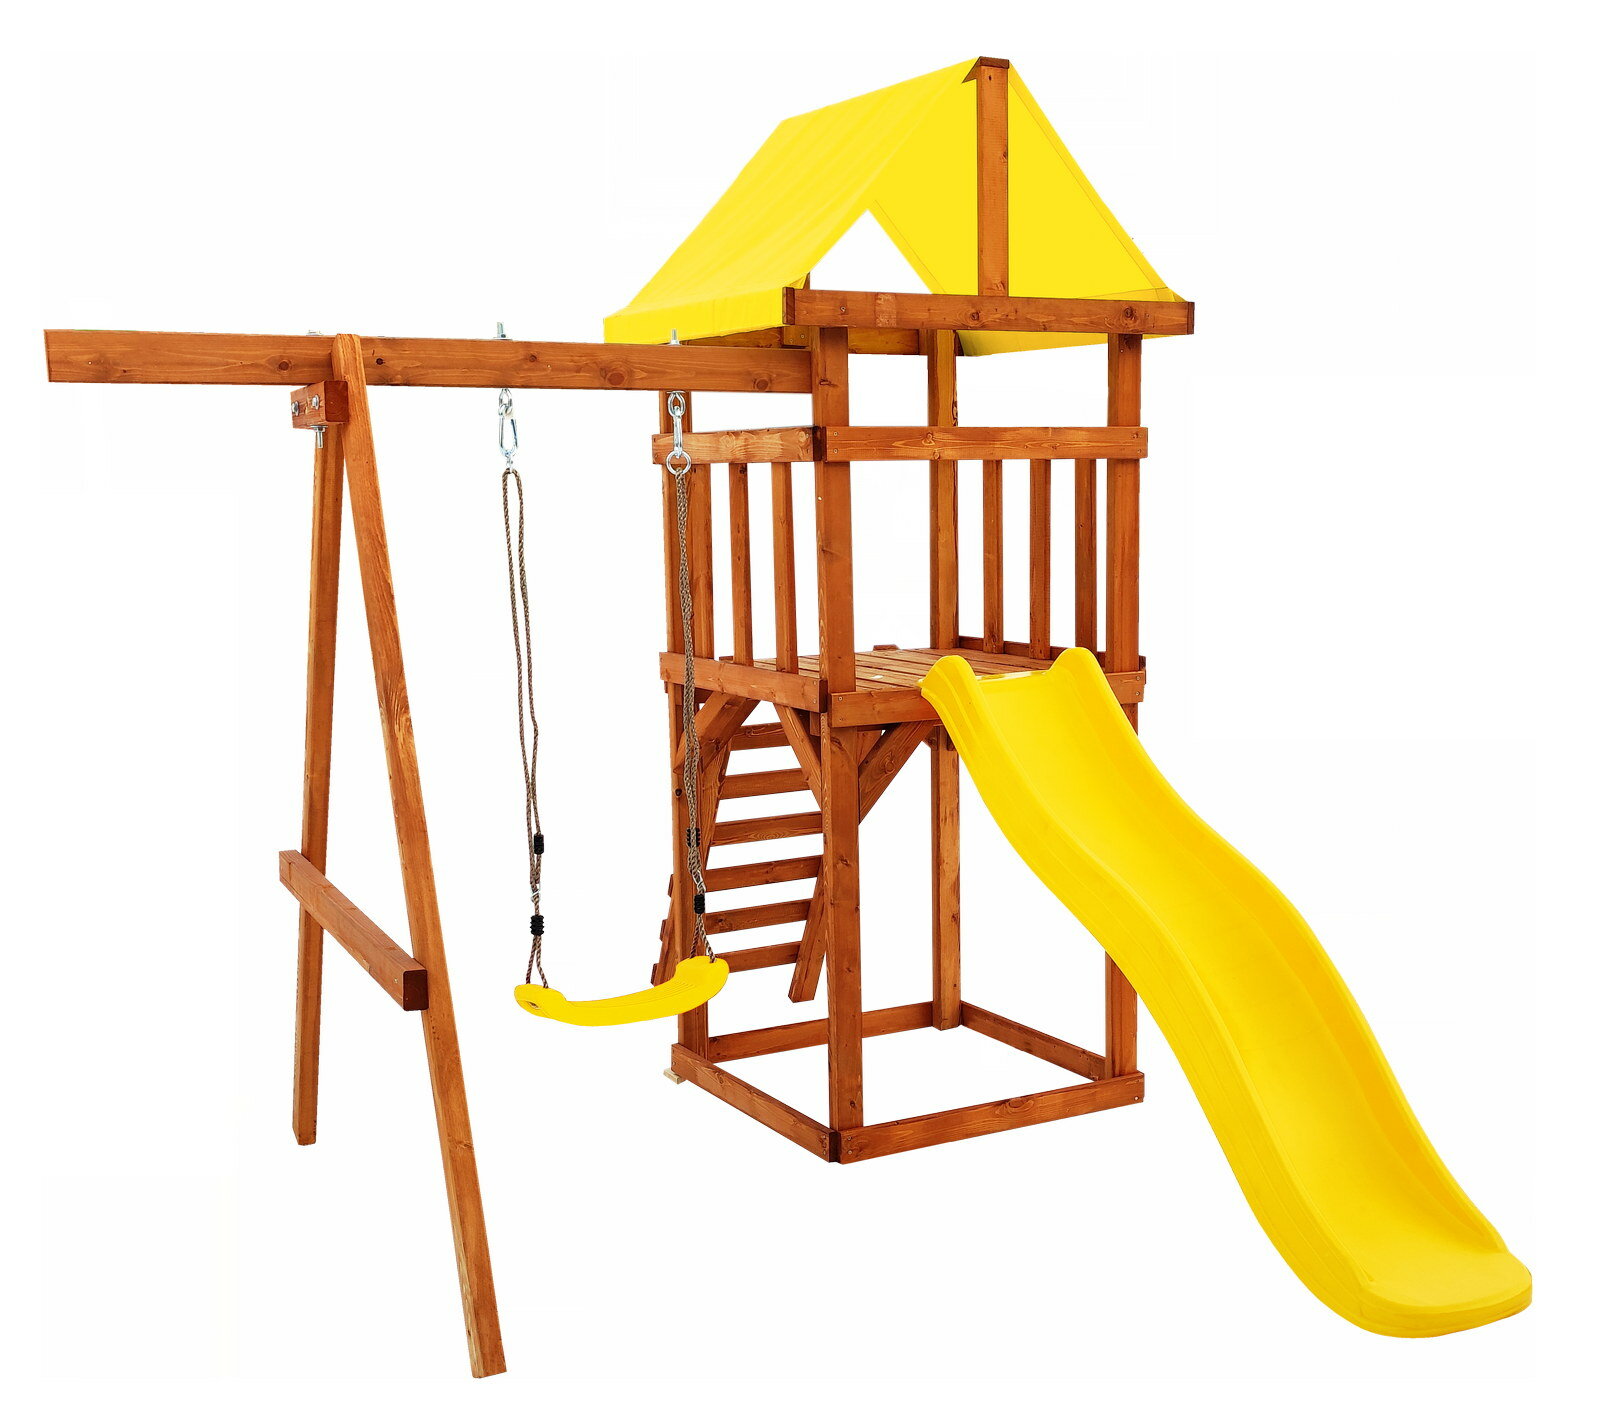 Детская игровая площадка Babygarden Sunplay - желтый (BG-PKG-SP01-Y)